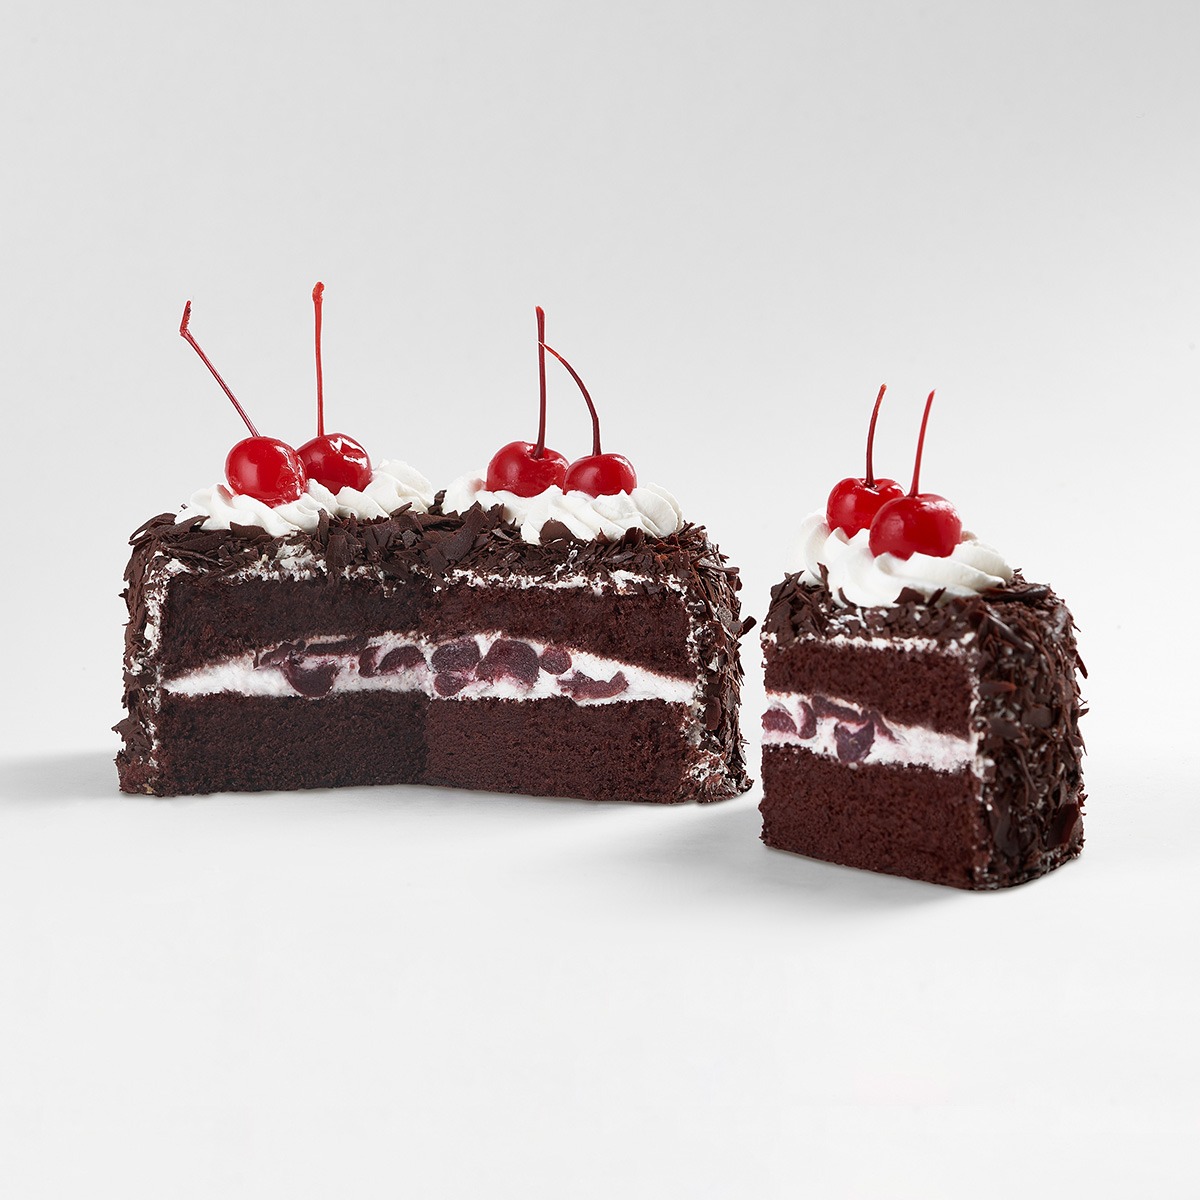 【紅葉蛋糕】[誕生日幸運禮] 全新黑森林蛋糕 6吋(700g/個)